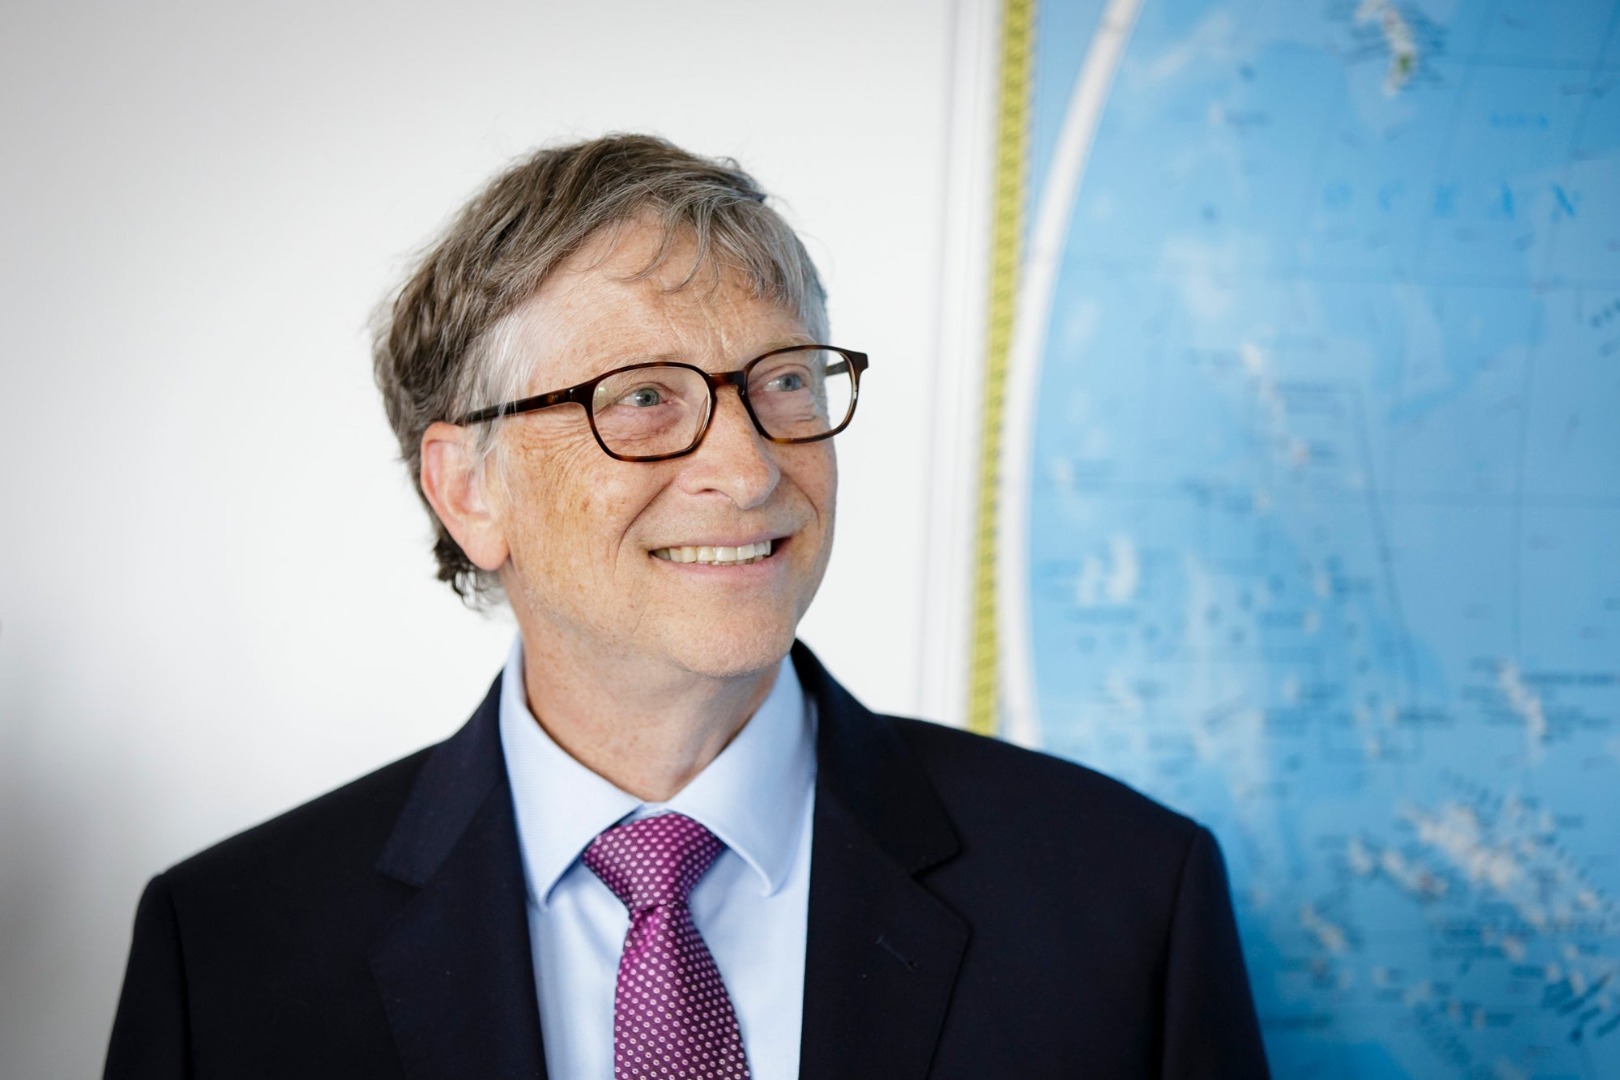 Koronanın olağan şüphelisi Bill Gates yeni kabusun sinyalini verdi. Tam ''Her şey normale döndü'' derken... 14